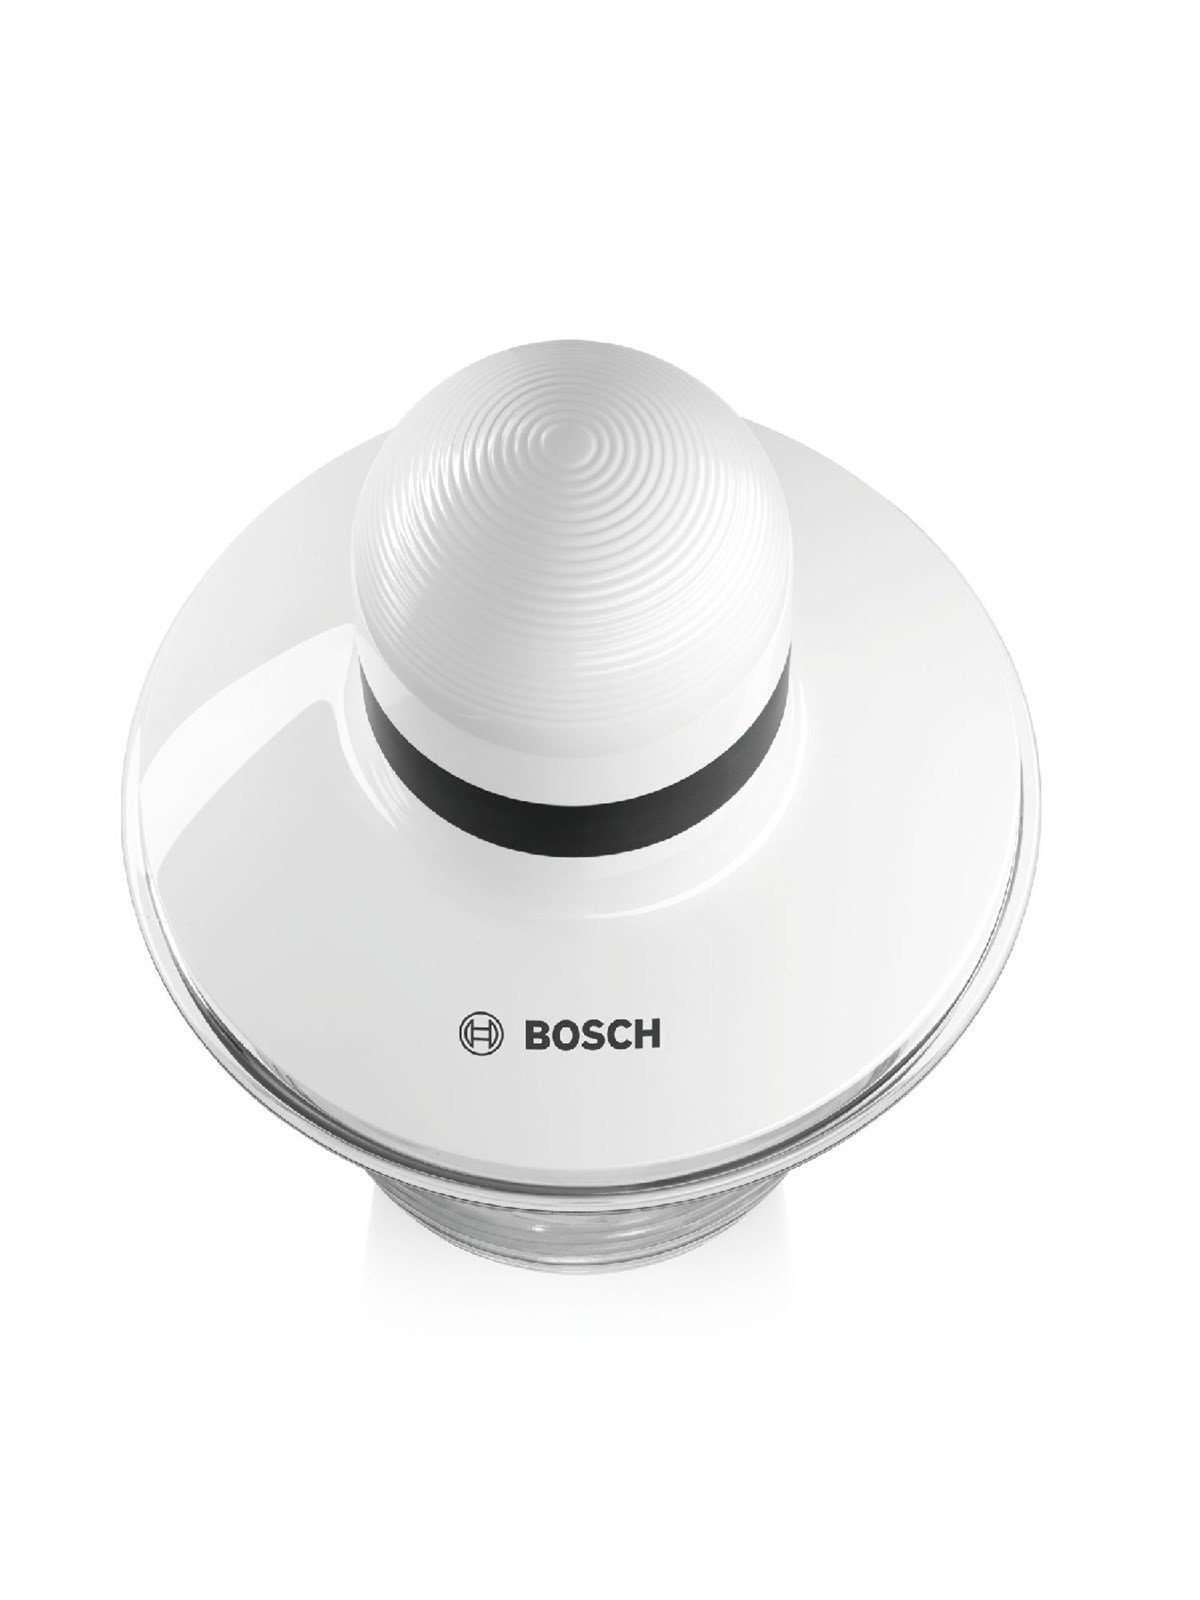 Bosch MMR08A1 Doğrayıcı en uygun fiyatlar ile www.turkuaztrade.com'da.